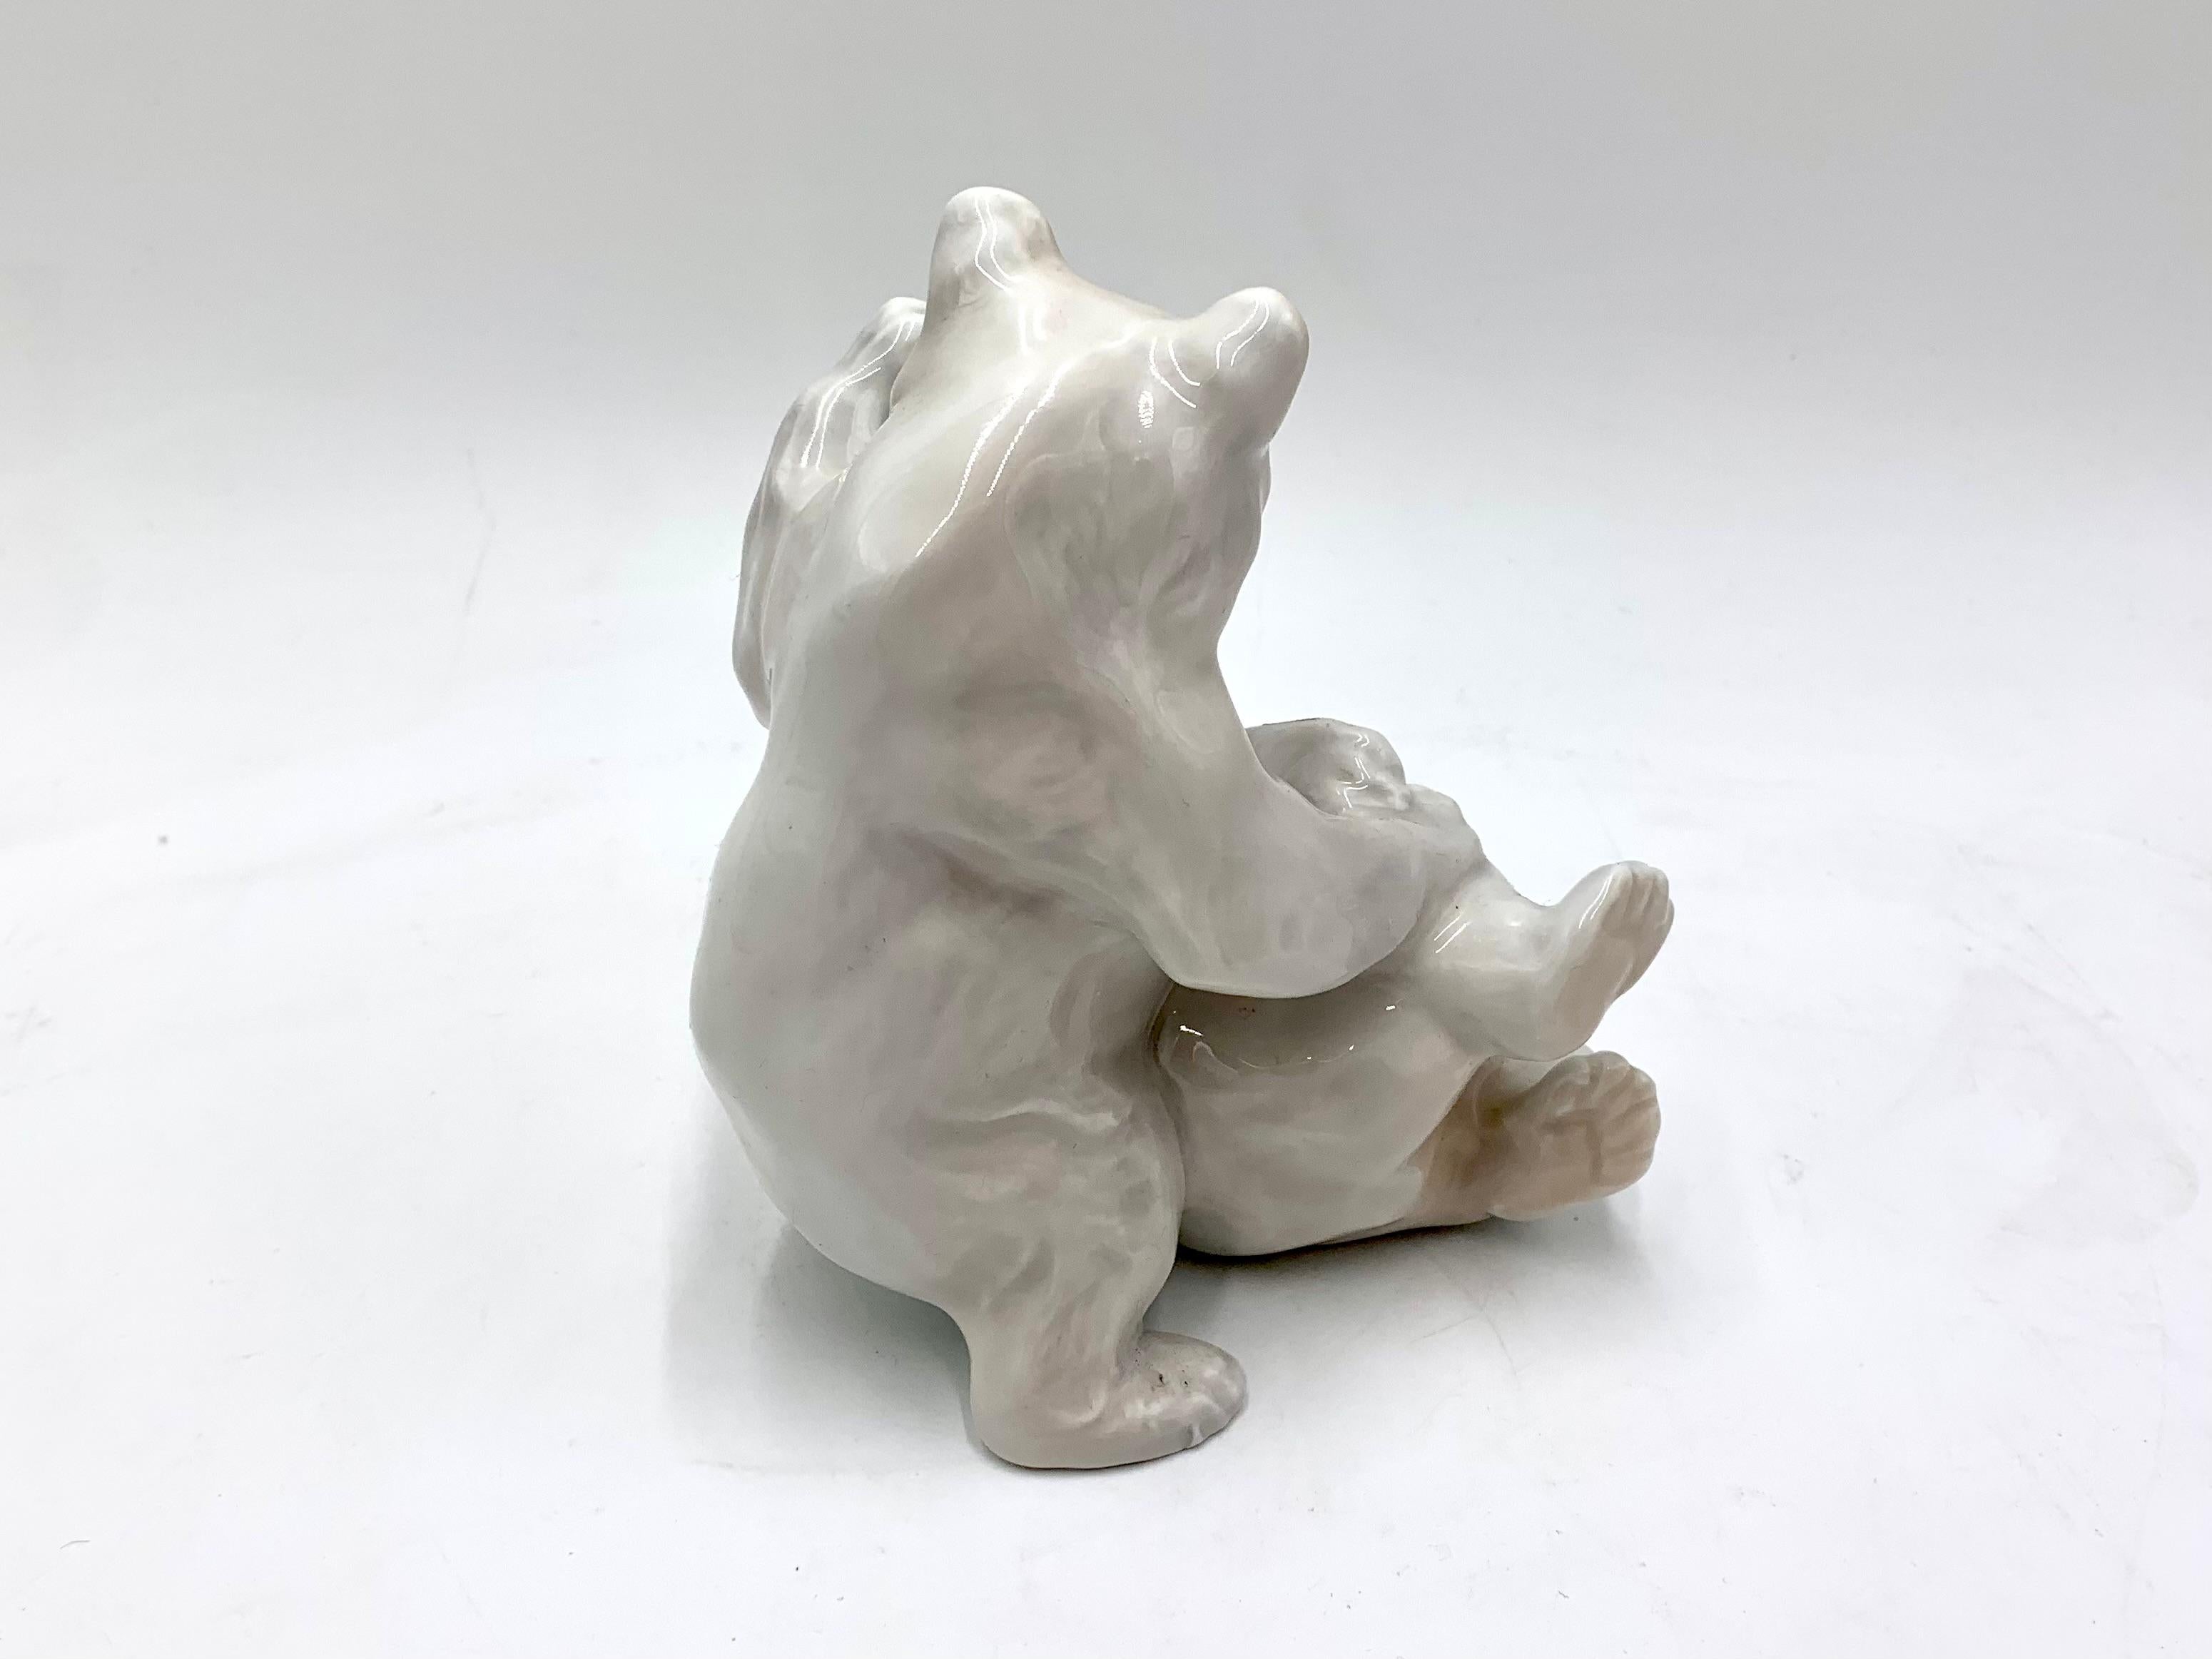 Danish Porcelain Figurine of Polar Bears, Royal Copenhagen, Denmark, 1960s